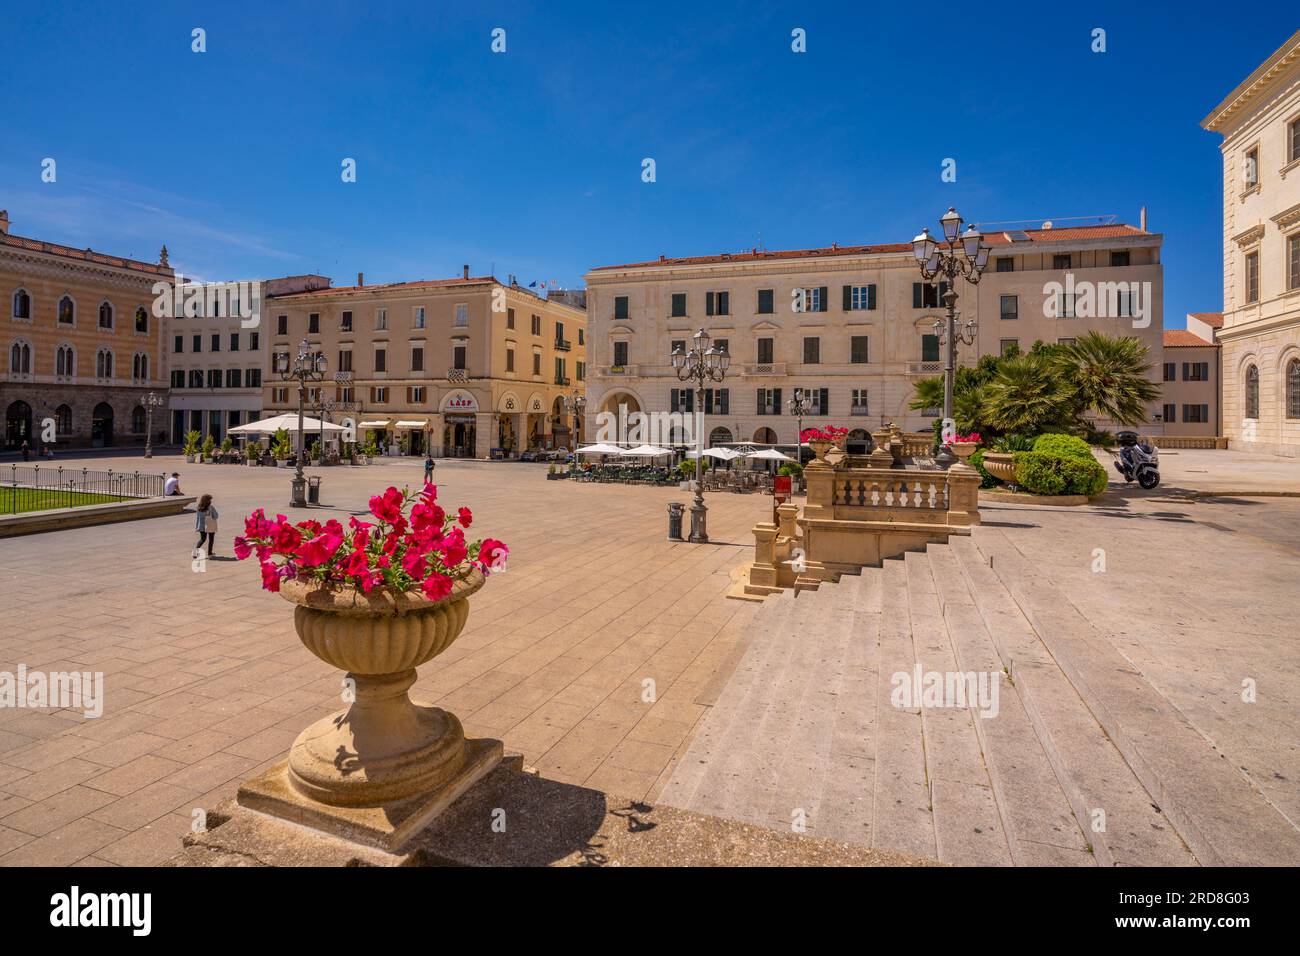 Blick auf die klassische Architektur und die Statue Vittorio Emanuele II auf der Piazza d'Italia in Sassari, Sassari, Sardinien, Italien, Mittelmeer, Europa Stockfoto